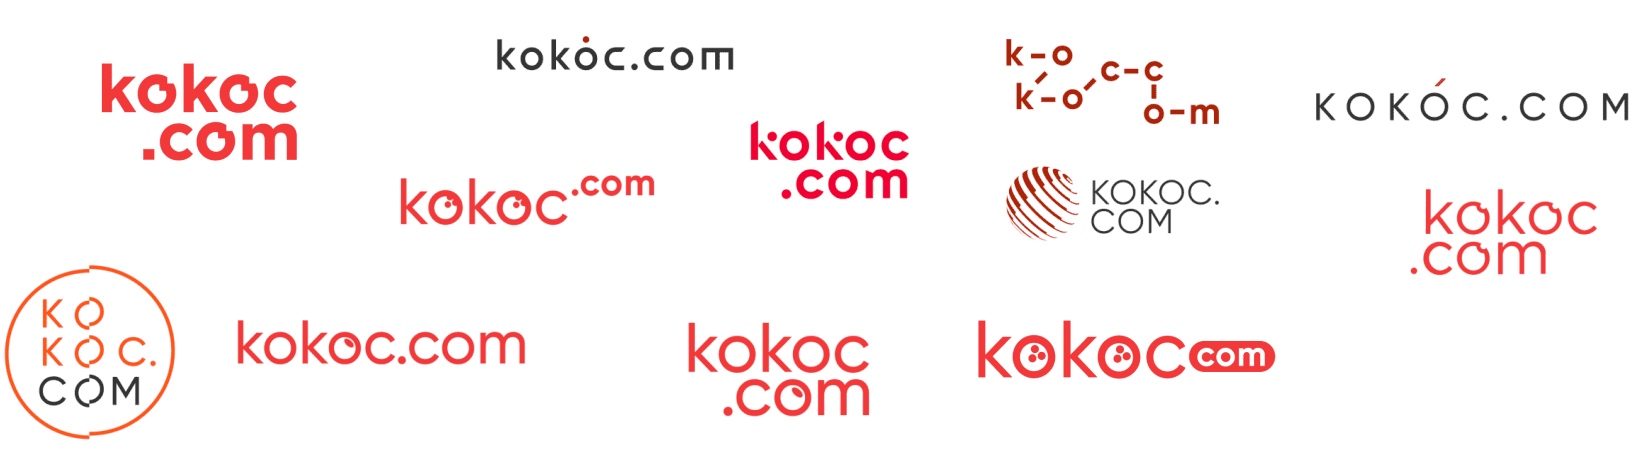 Стартовые варианты на внутреннем конкурсе — логотип Kokoc мог быть таким